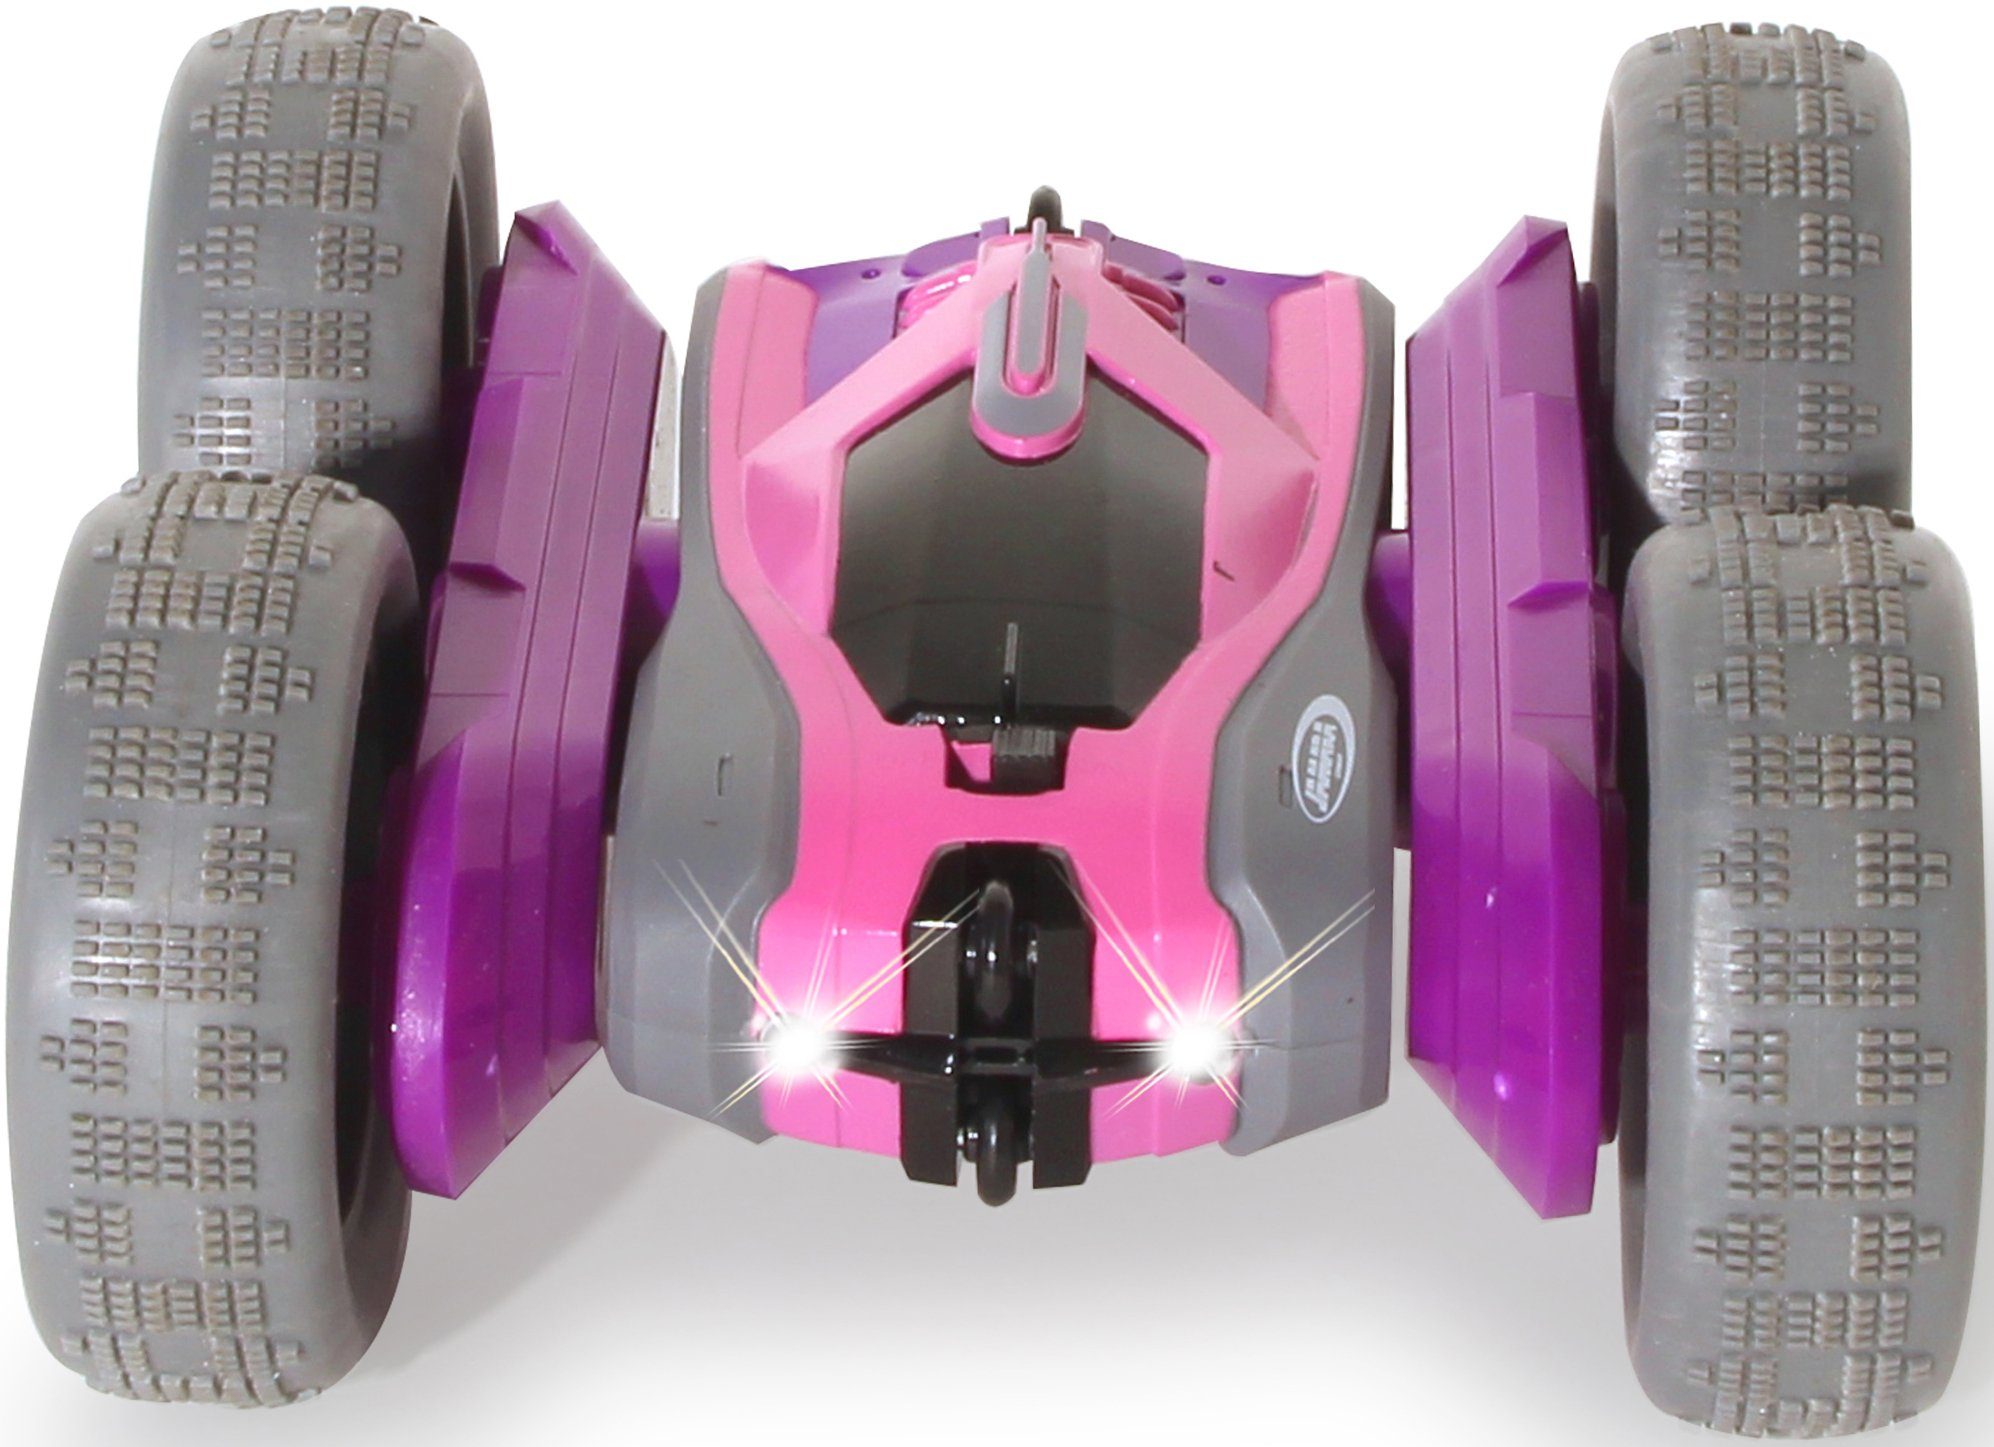 2,4GHz, Jamara RC-Auto Stuntcar SpinX mit lila-rosa, zuschaltbarem LED-Licht